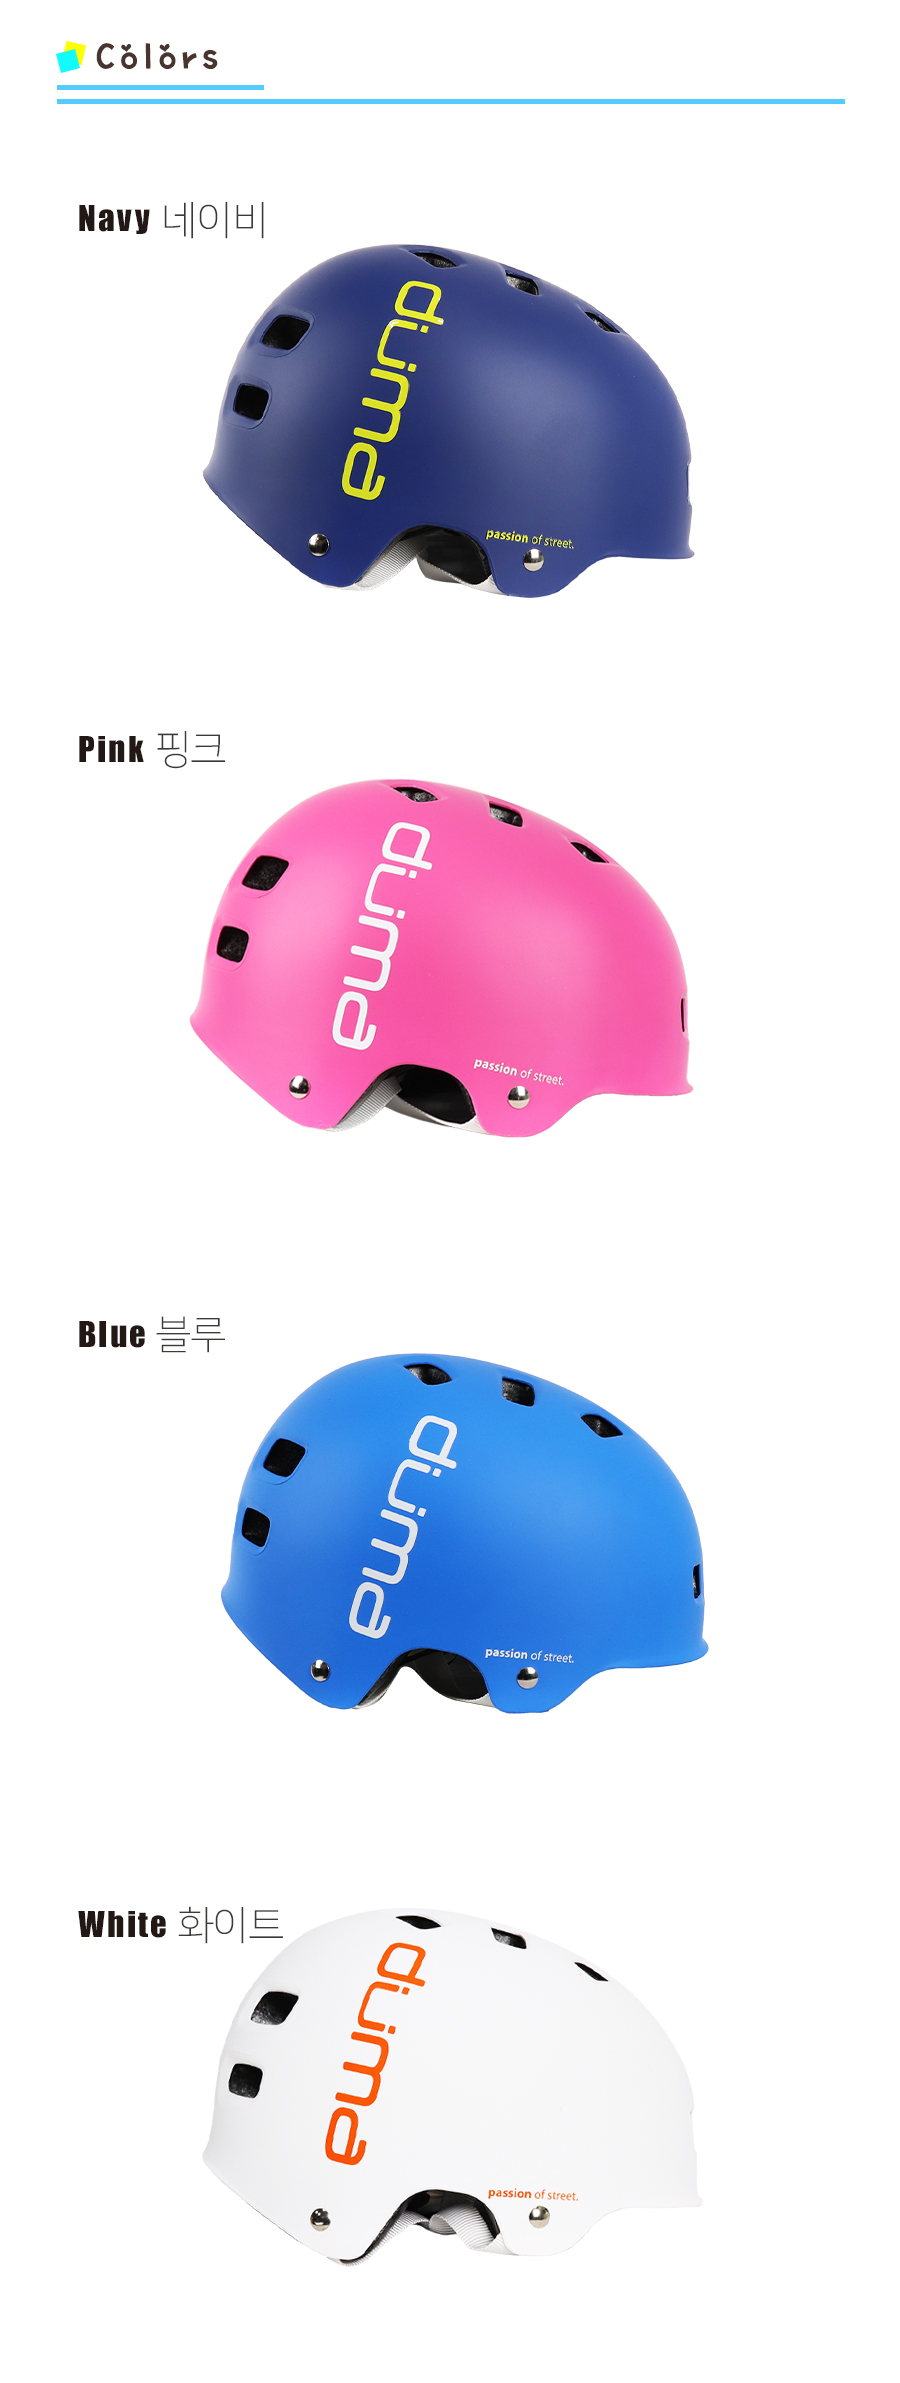 어반아동헬멧 고고타 브리즈번 색상 - navy(형광연두로고), pink(화이트로고), blue(화이트로고), white(오렌지로고)